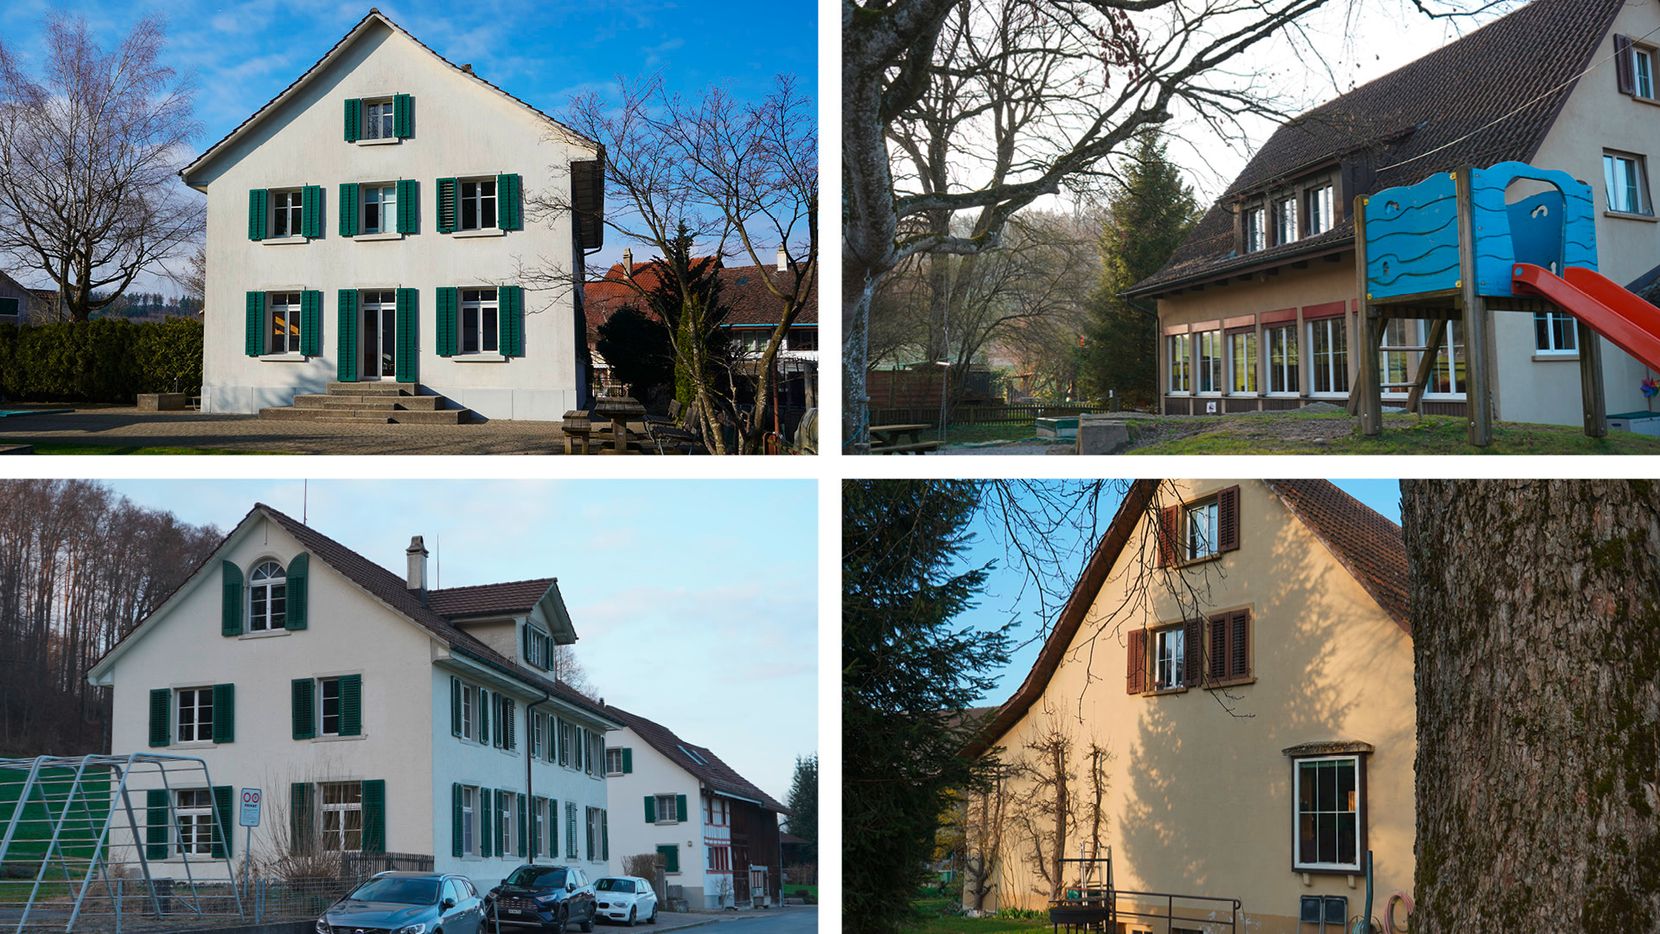 Bildkombo aus 4 Fotos von Kindergärten in Weisslingen.